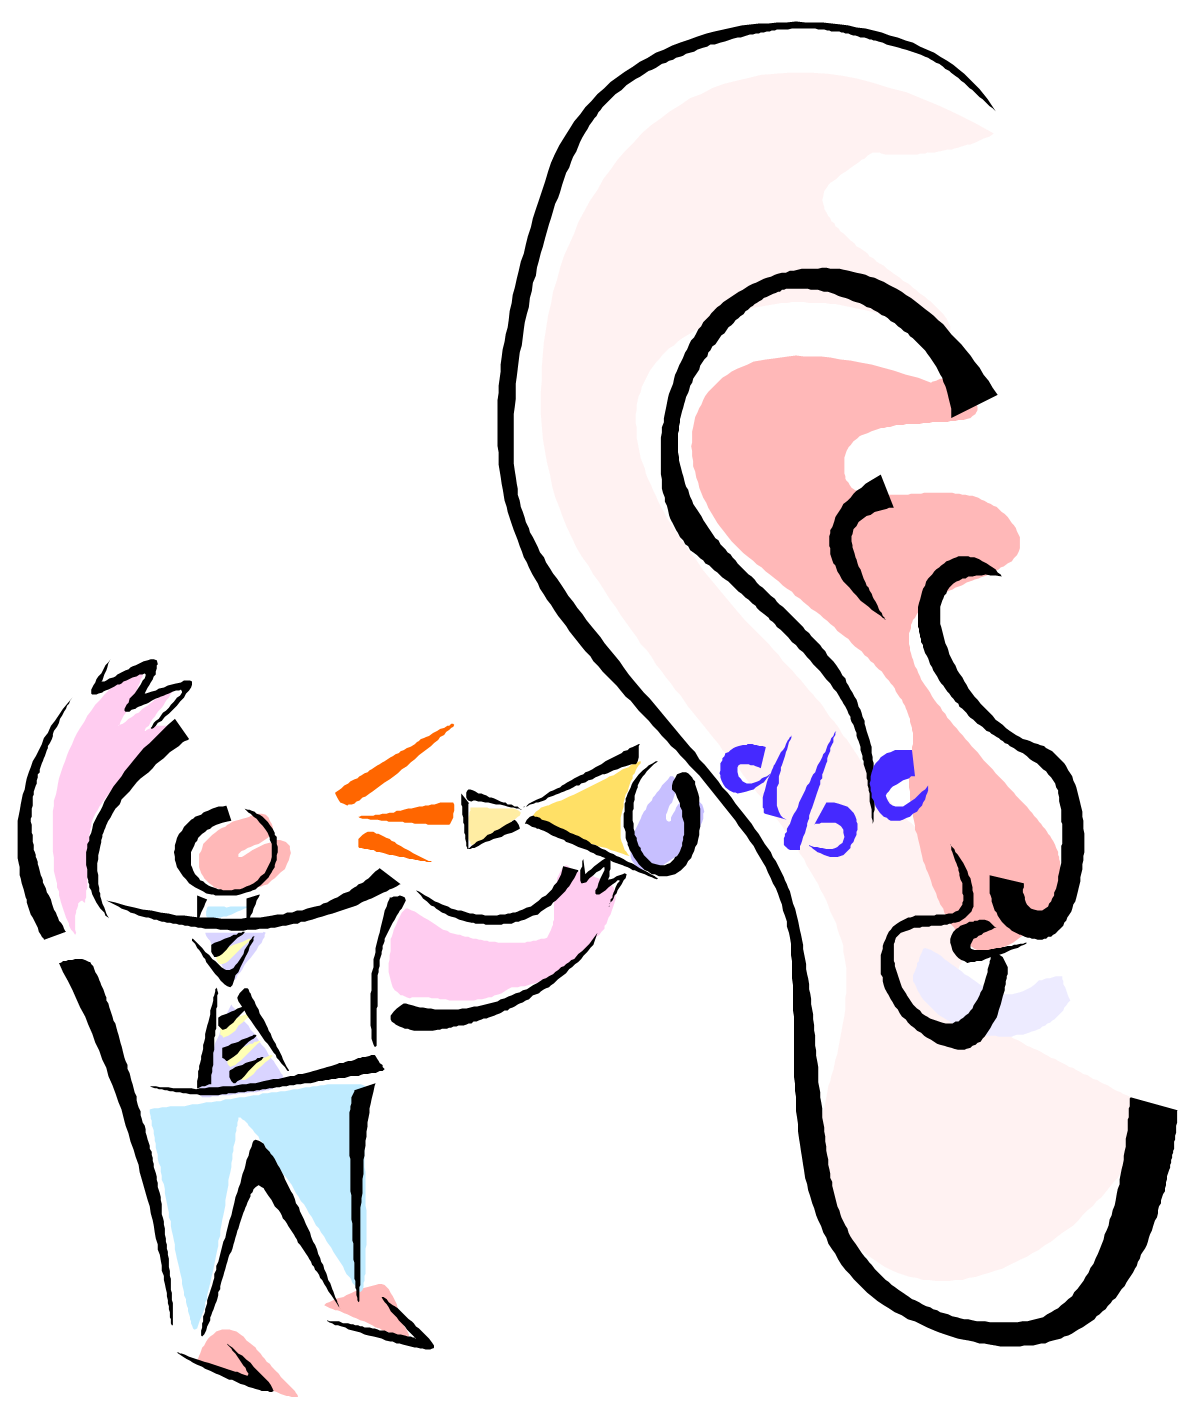 Ear, Listen, Hear, Gossip, So